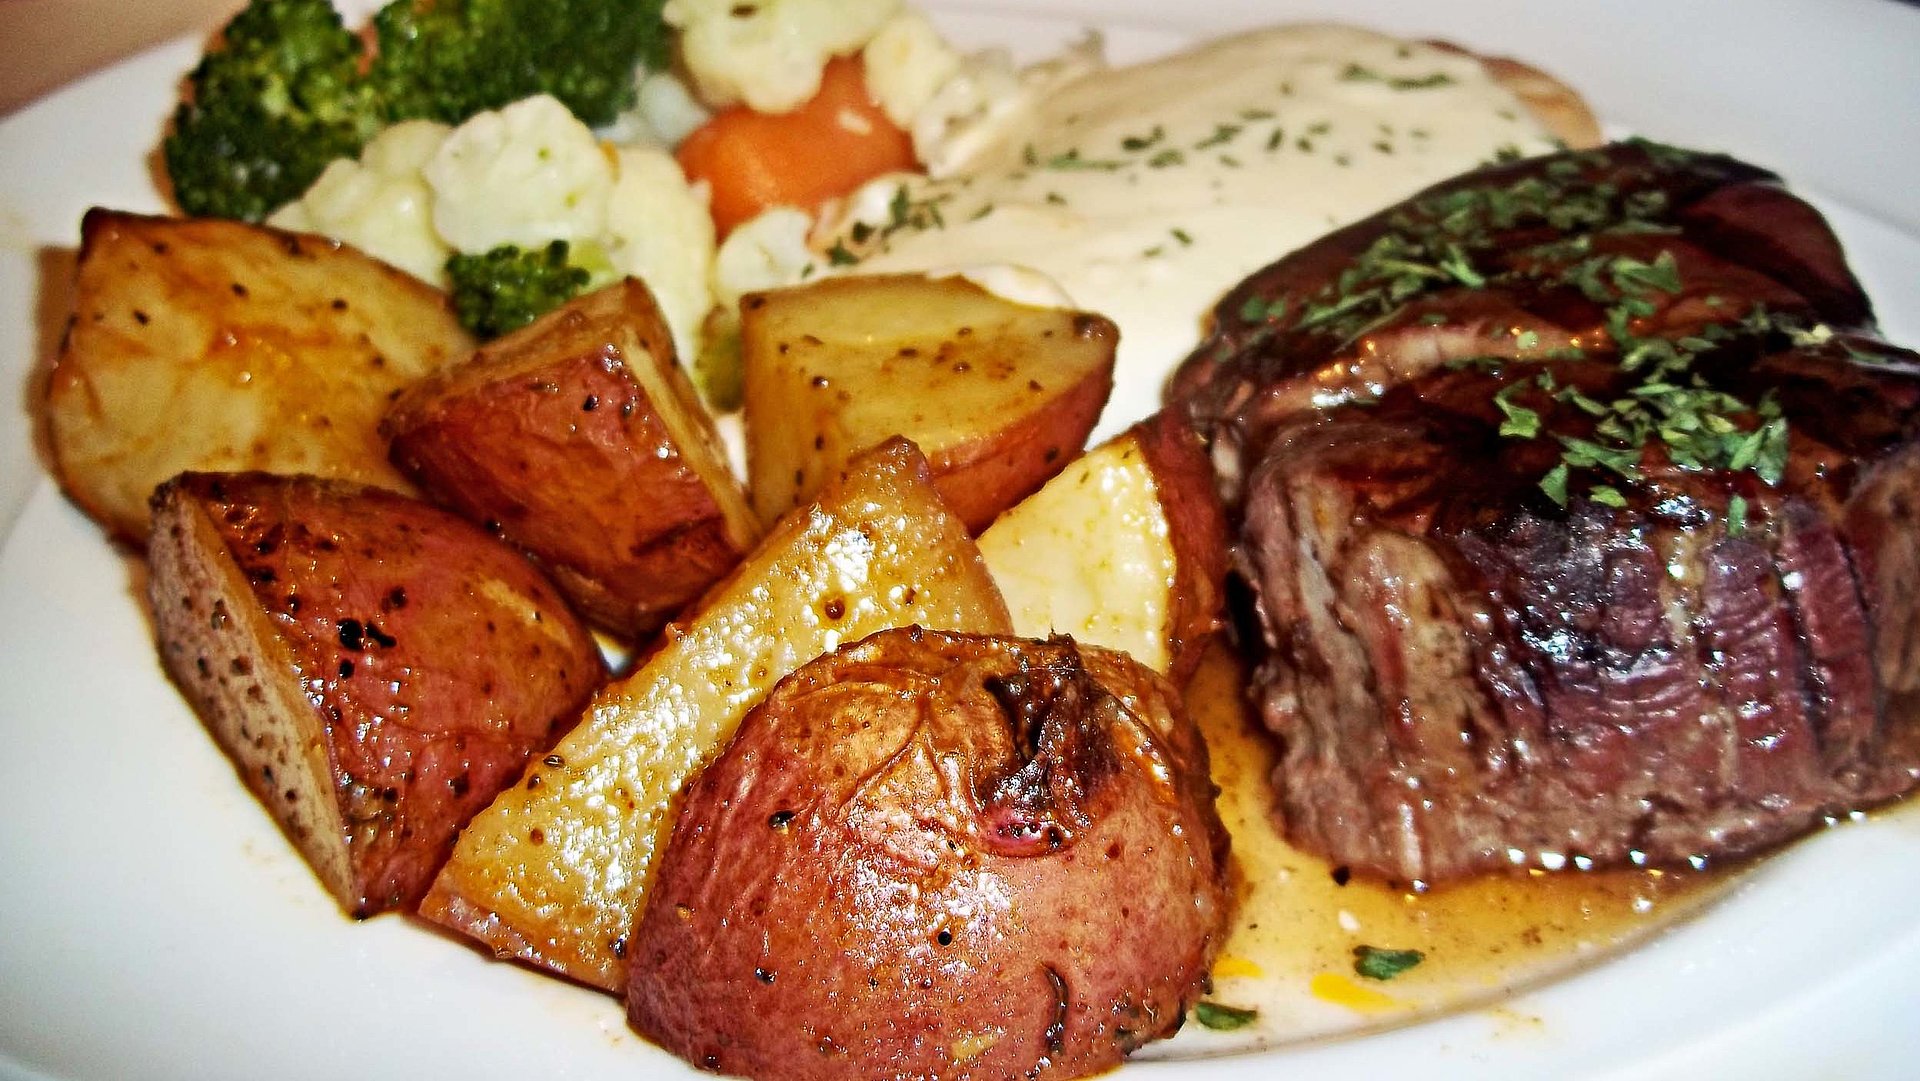 Steak essen in der Fränkischen Schweiz - Teller gefüllt mit, u.a., saftigem Steak und gebratenen Kartoffeln